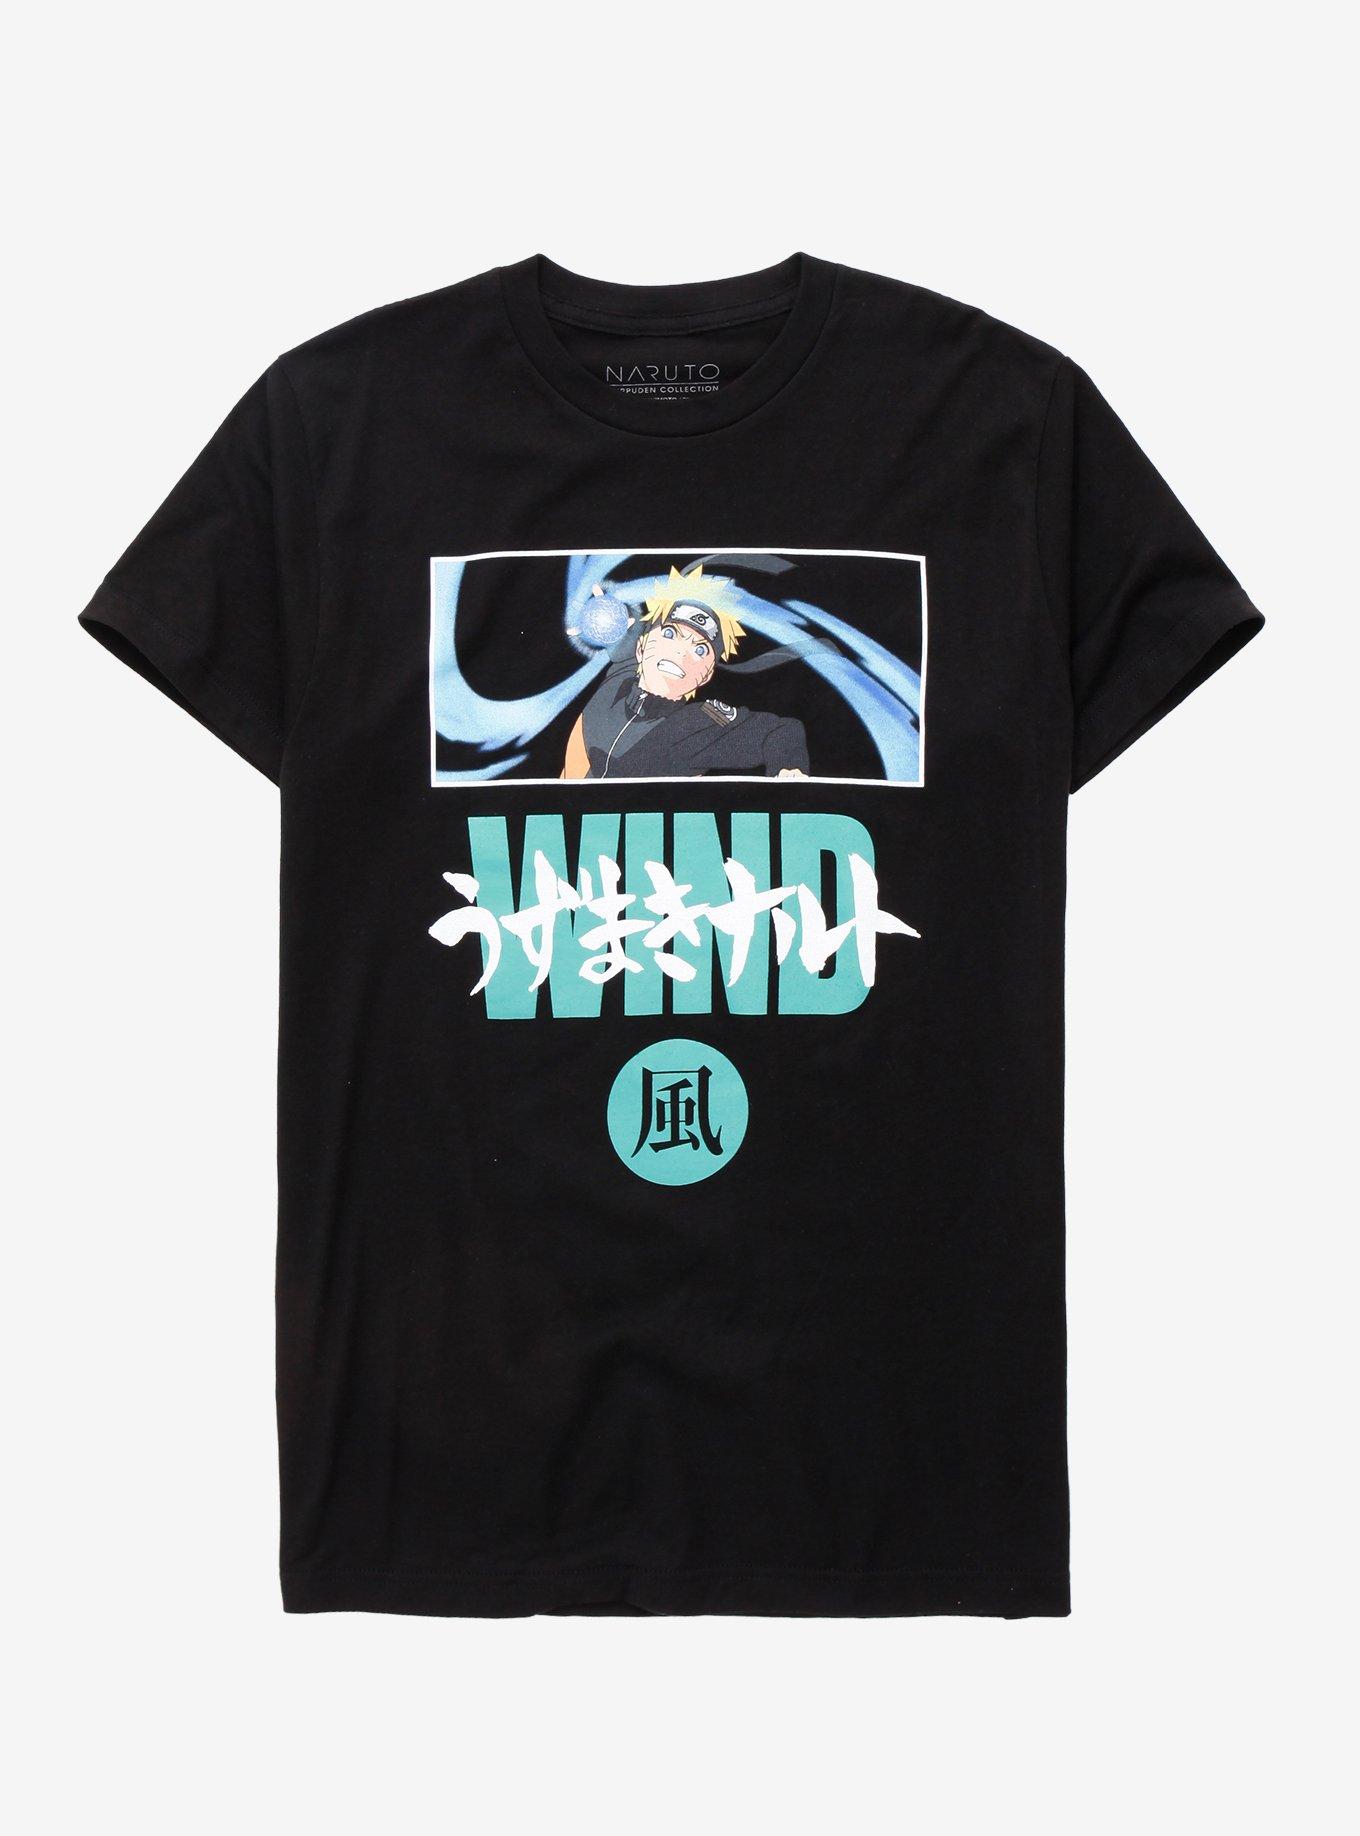 Naruto Shippuden Naruto Wind T-Shirt, BLACK, hi-res